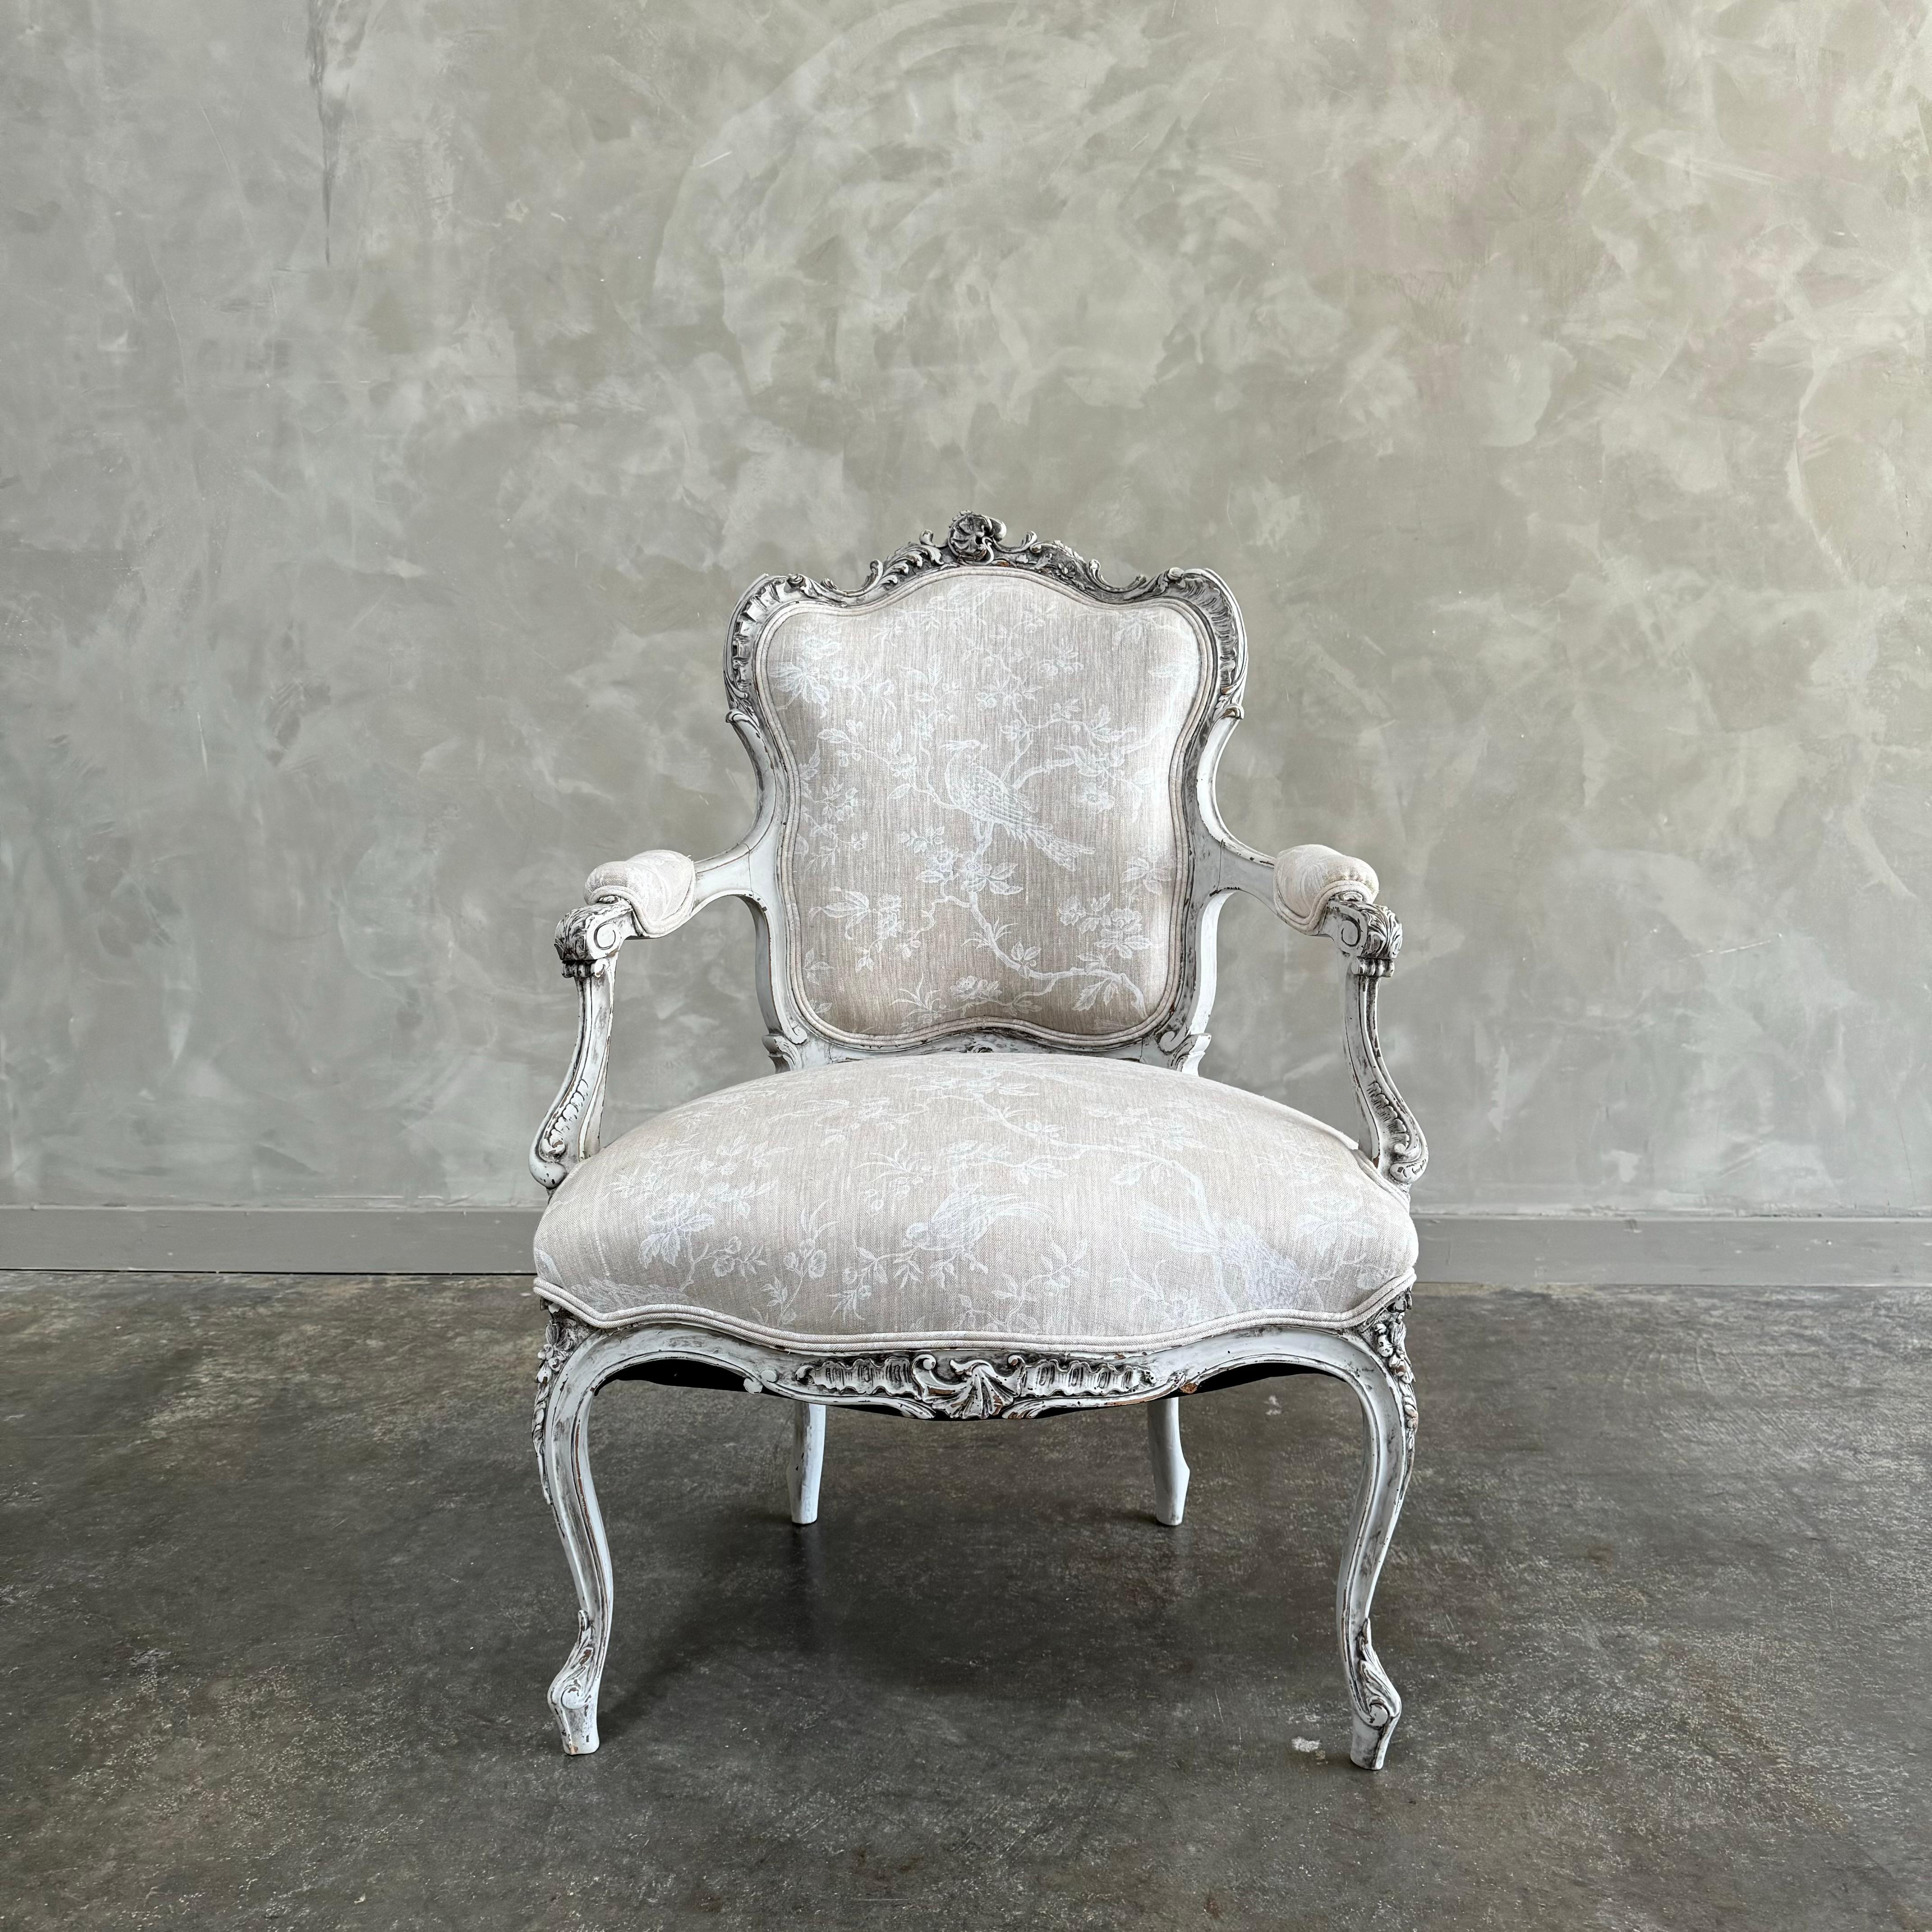 Antiker französischer Stuhl im Louis-XV-Stil, lackiert in französischem Austerngrau mit dezenten Rändern, mit einer antiken Patina versehen. Sitz und Rückenlehne sind mit schönem, bedrucktem Leinen gepolstert, solide und robust für den täglichen